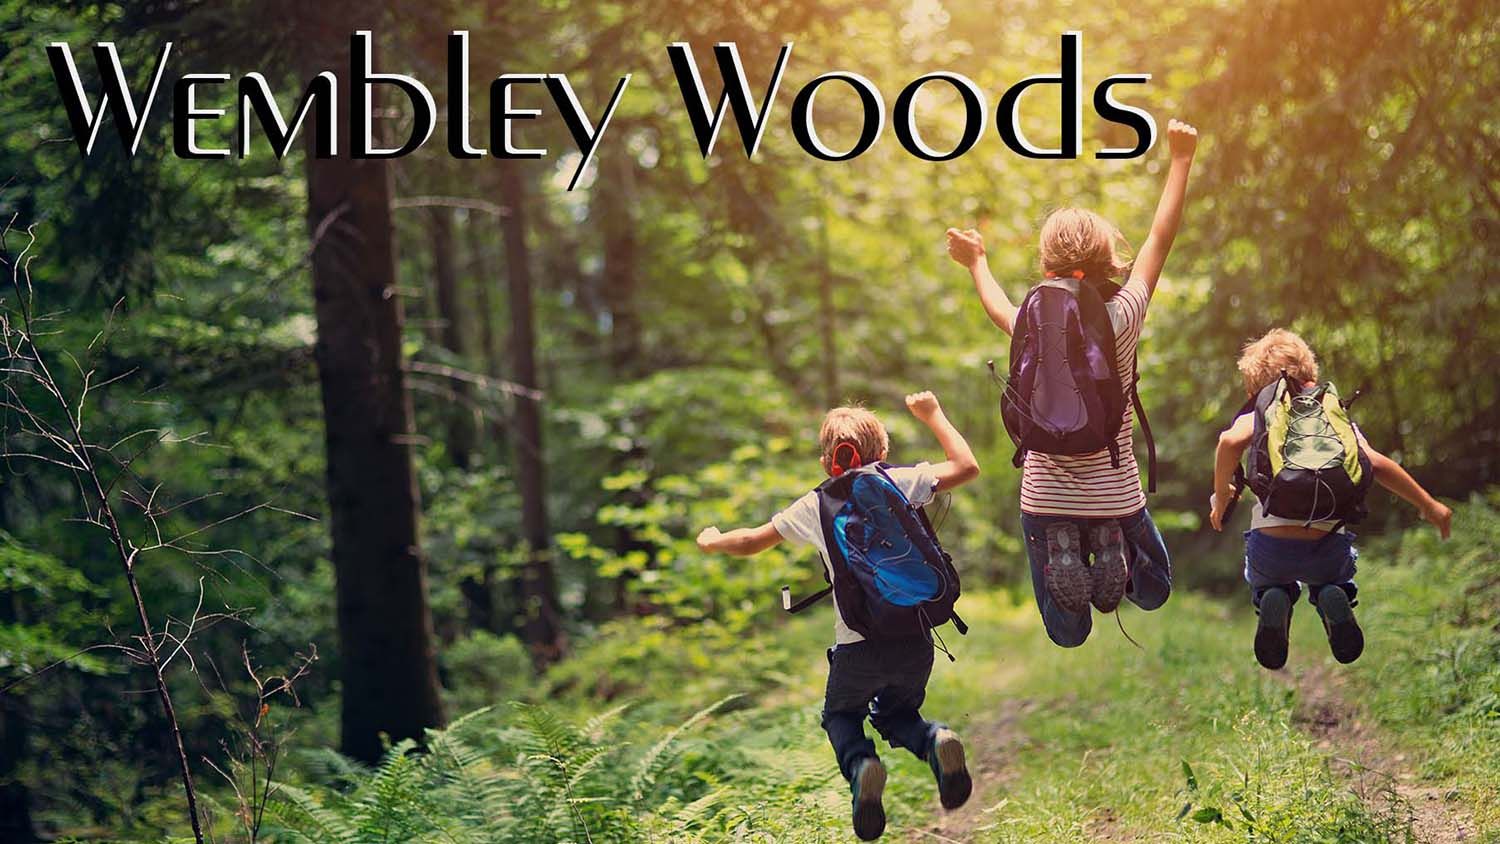 Children running through forest.